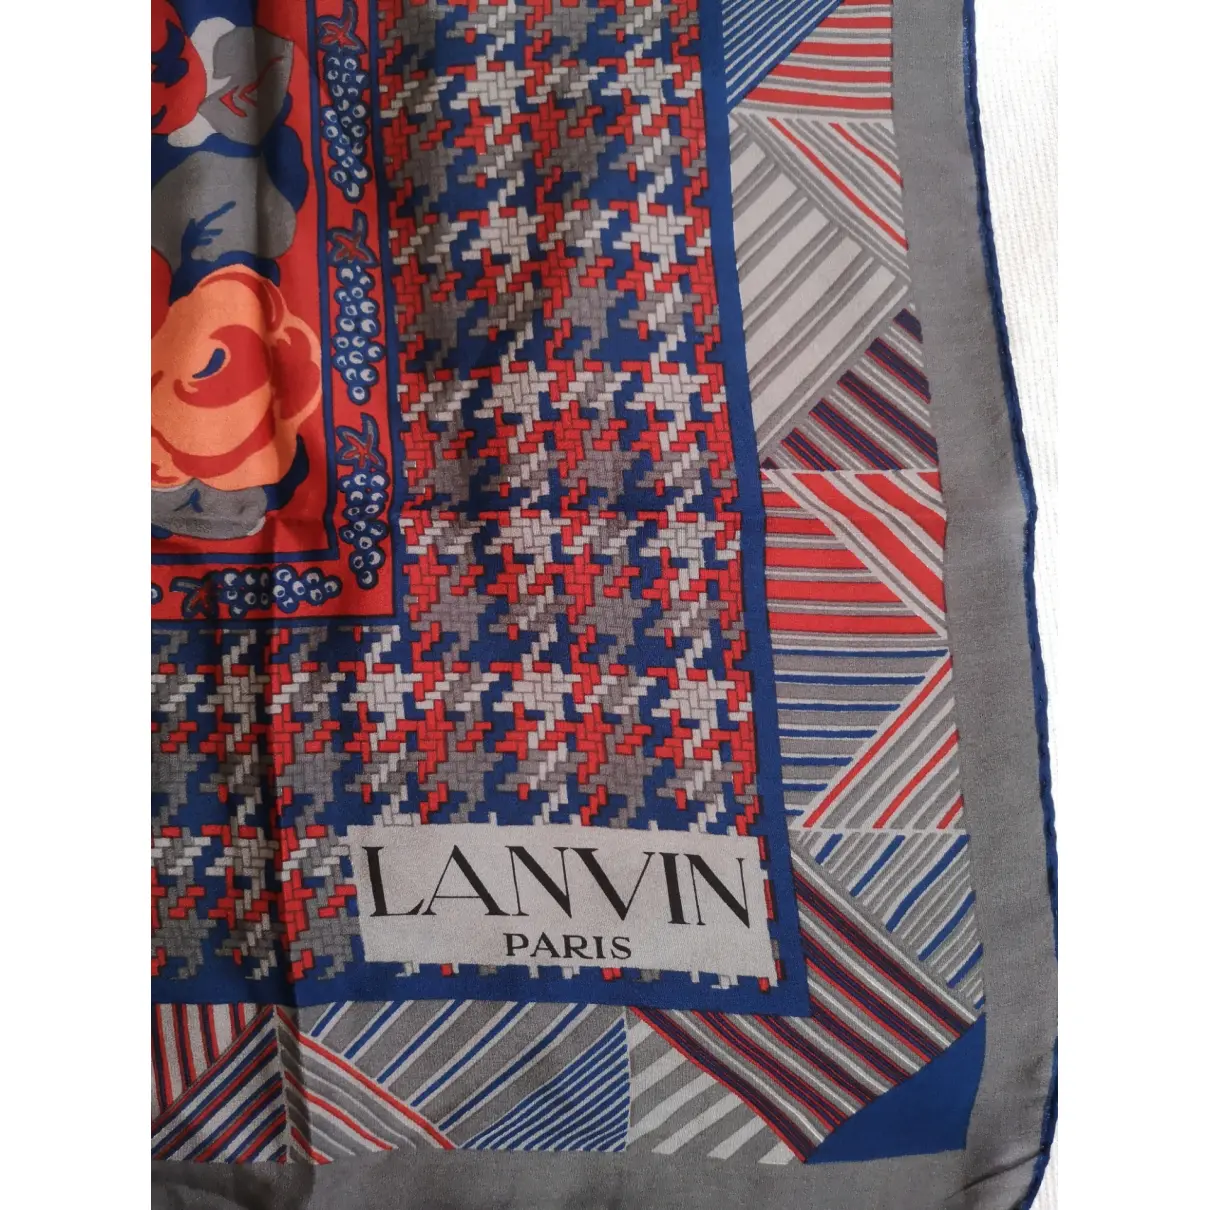 Buy Lanvin Silk neckerchief online - Vintage